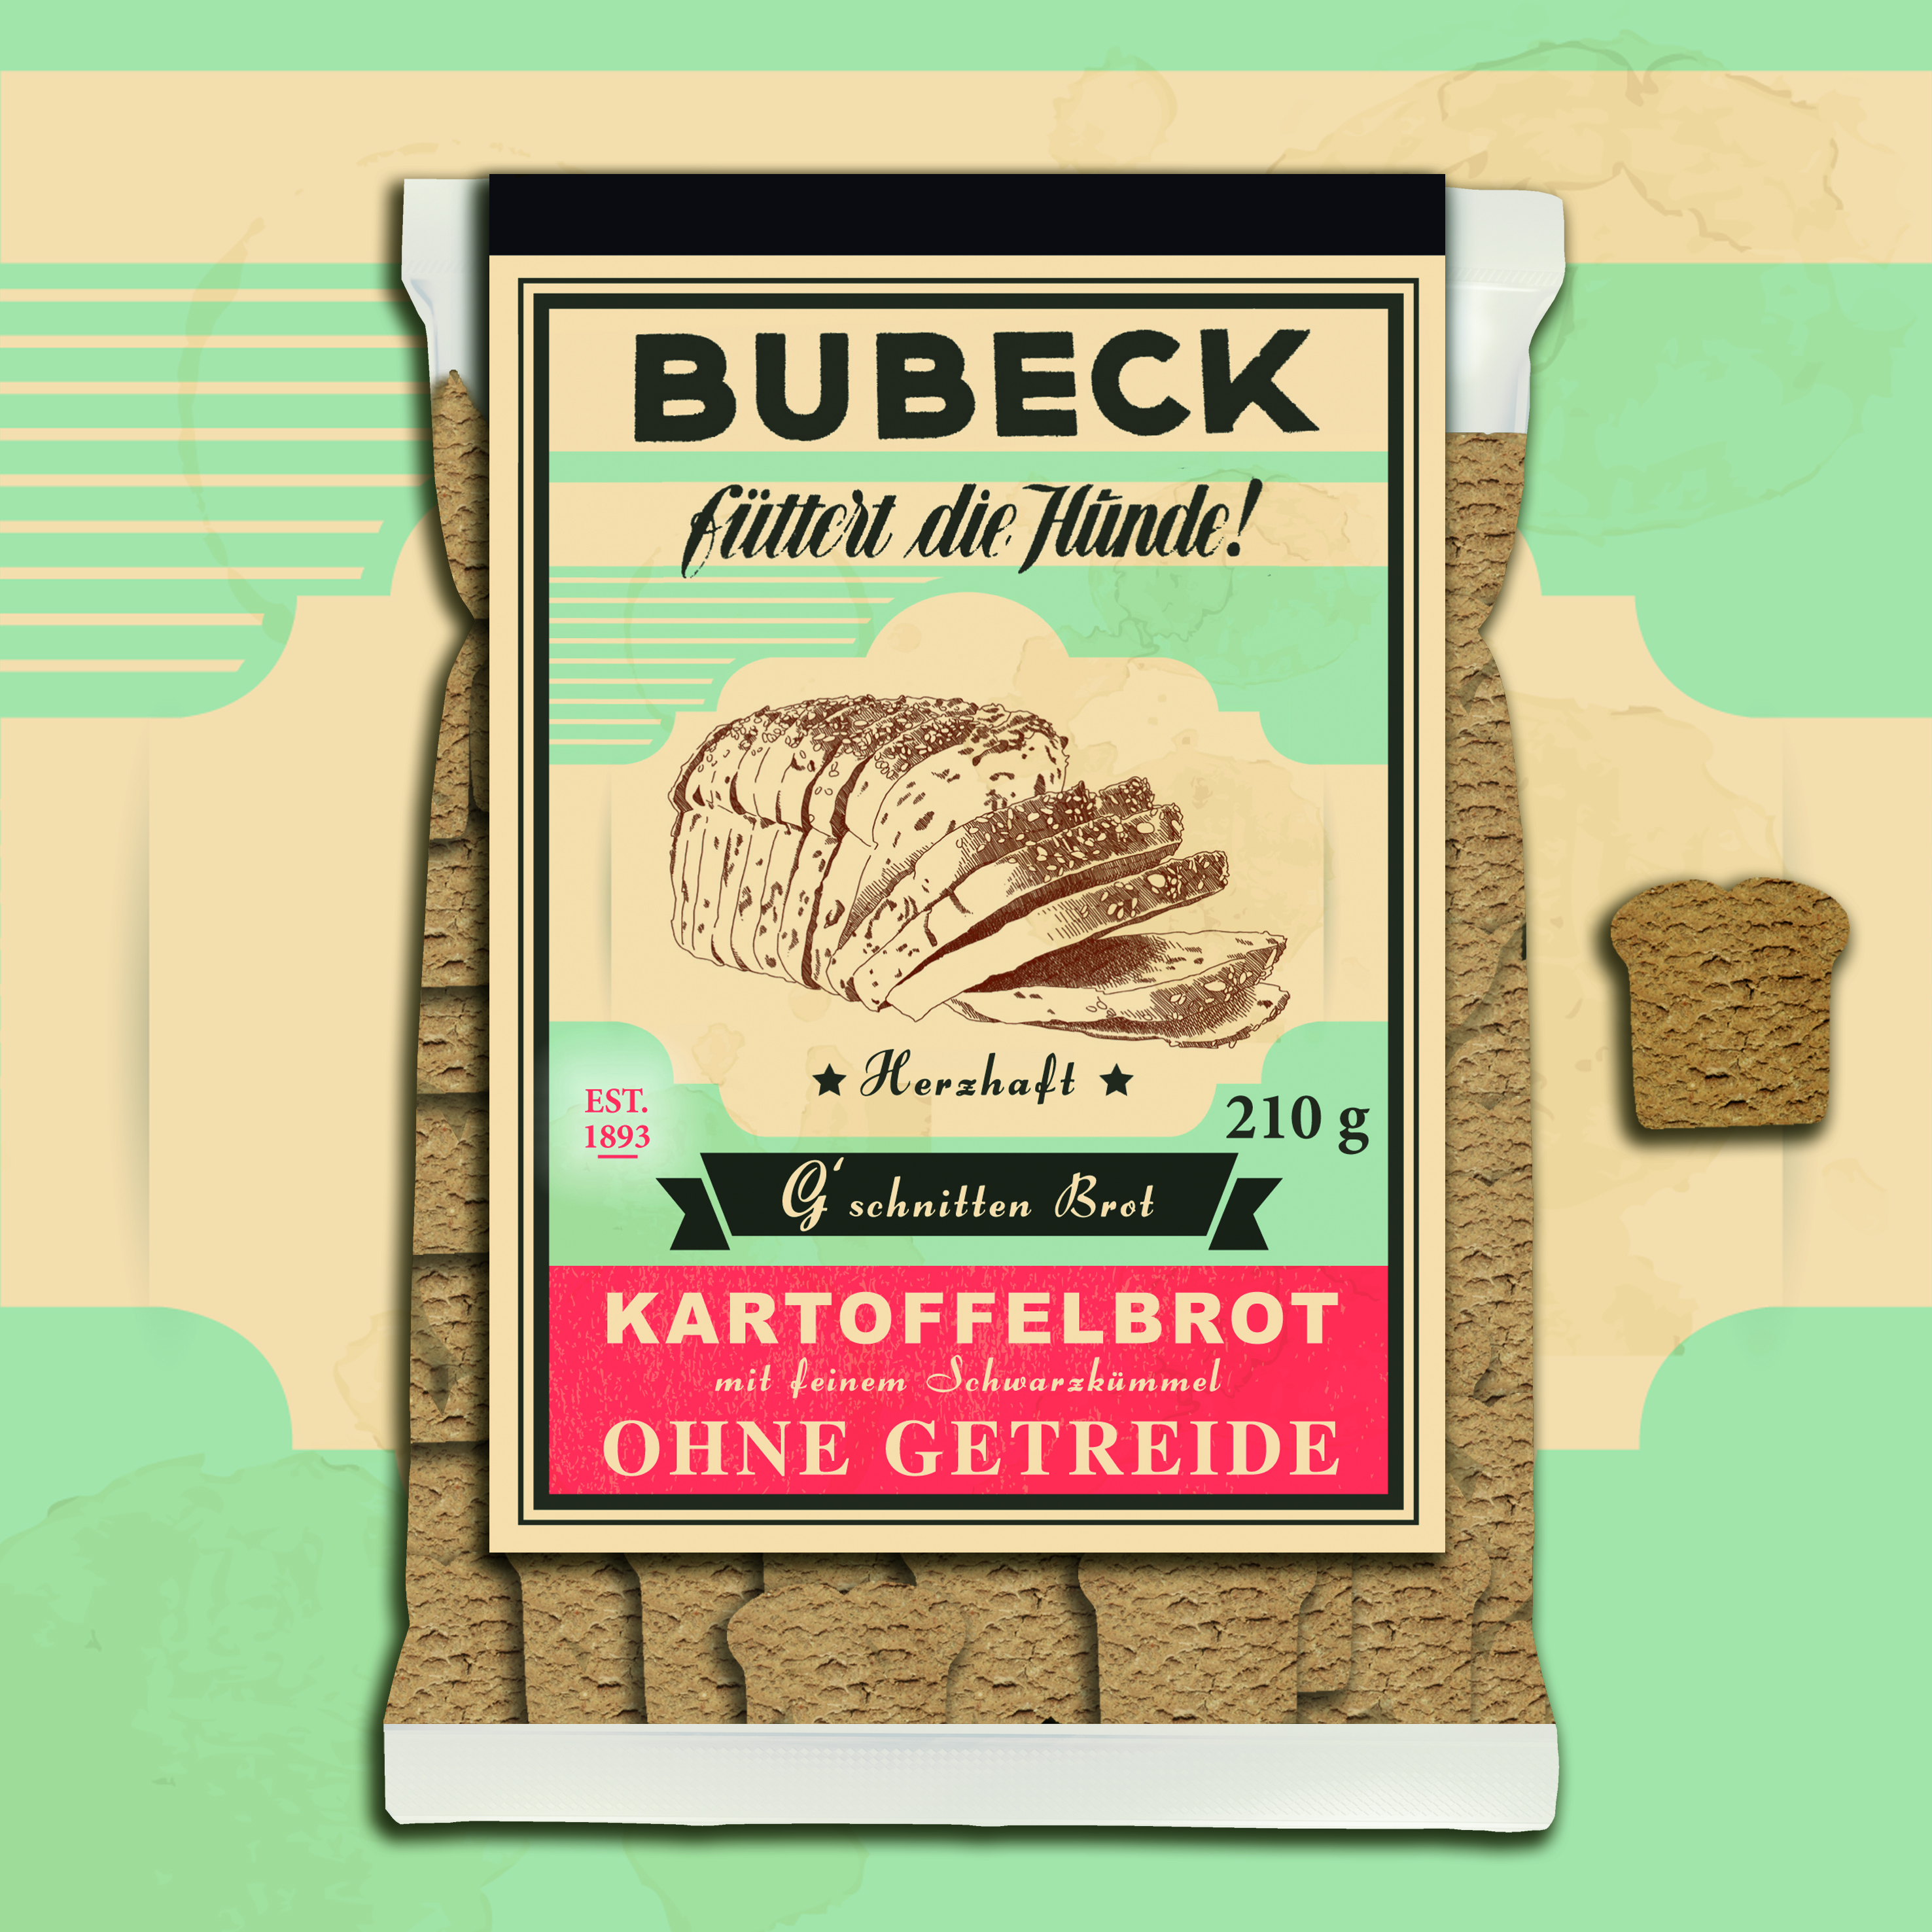 Bubeck, G´schnitten Brot 210g